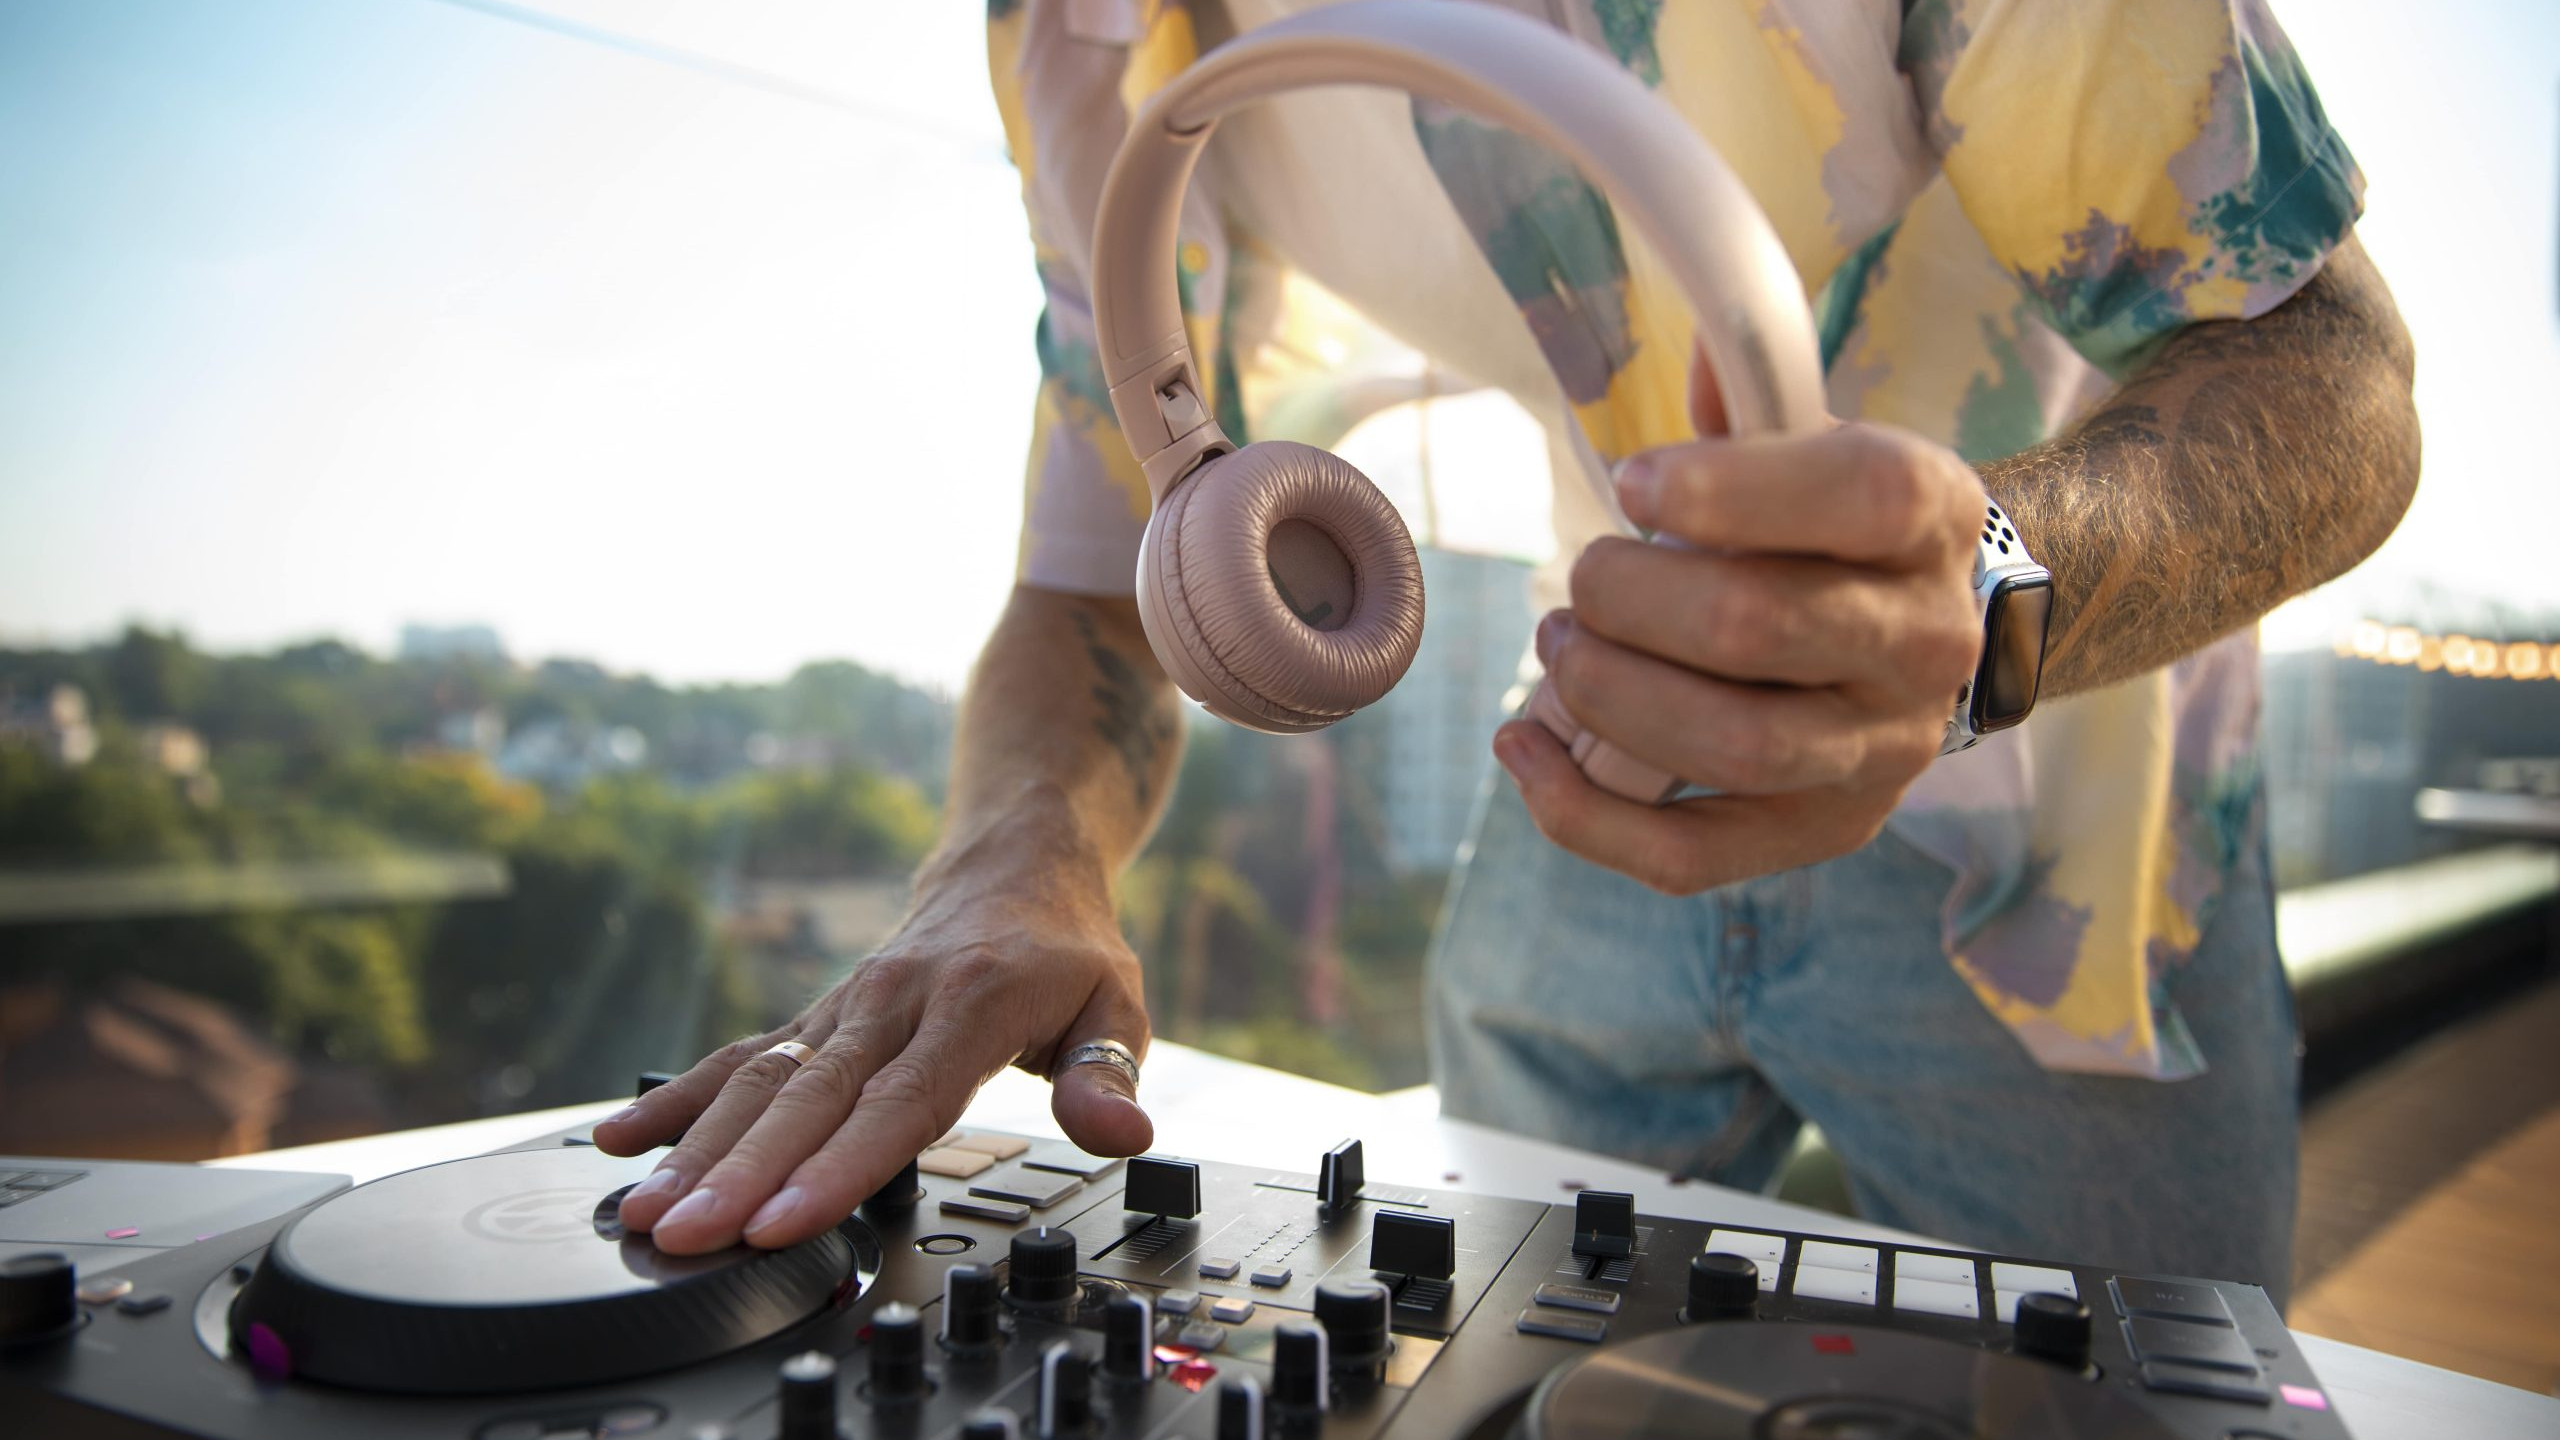 DJ mit Kopfhörern am Mischpult